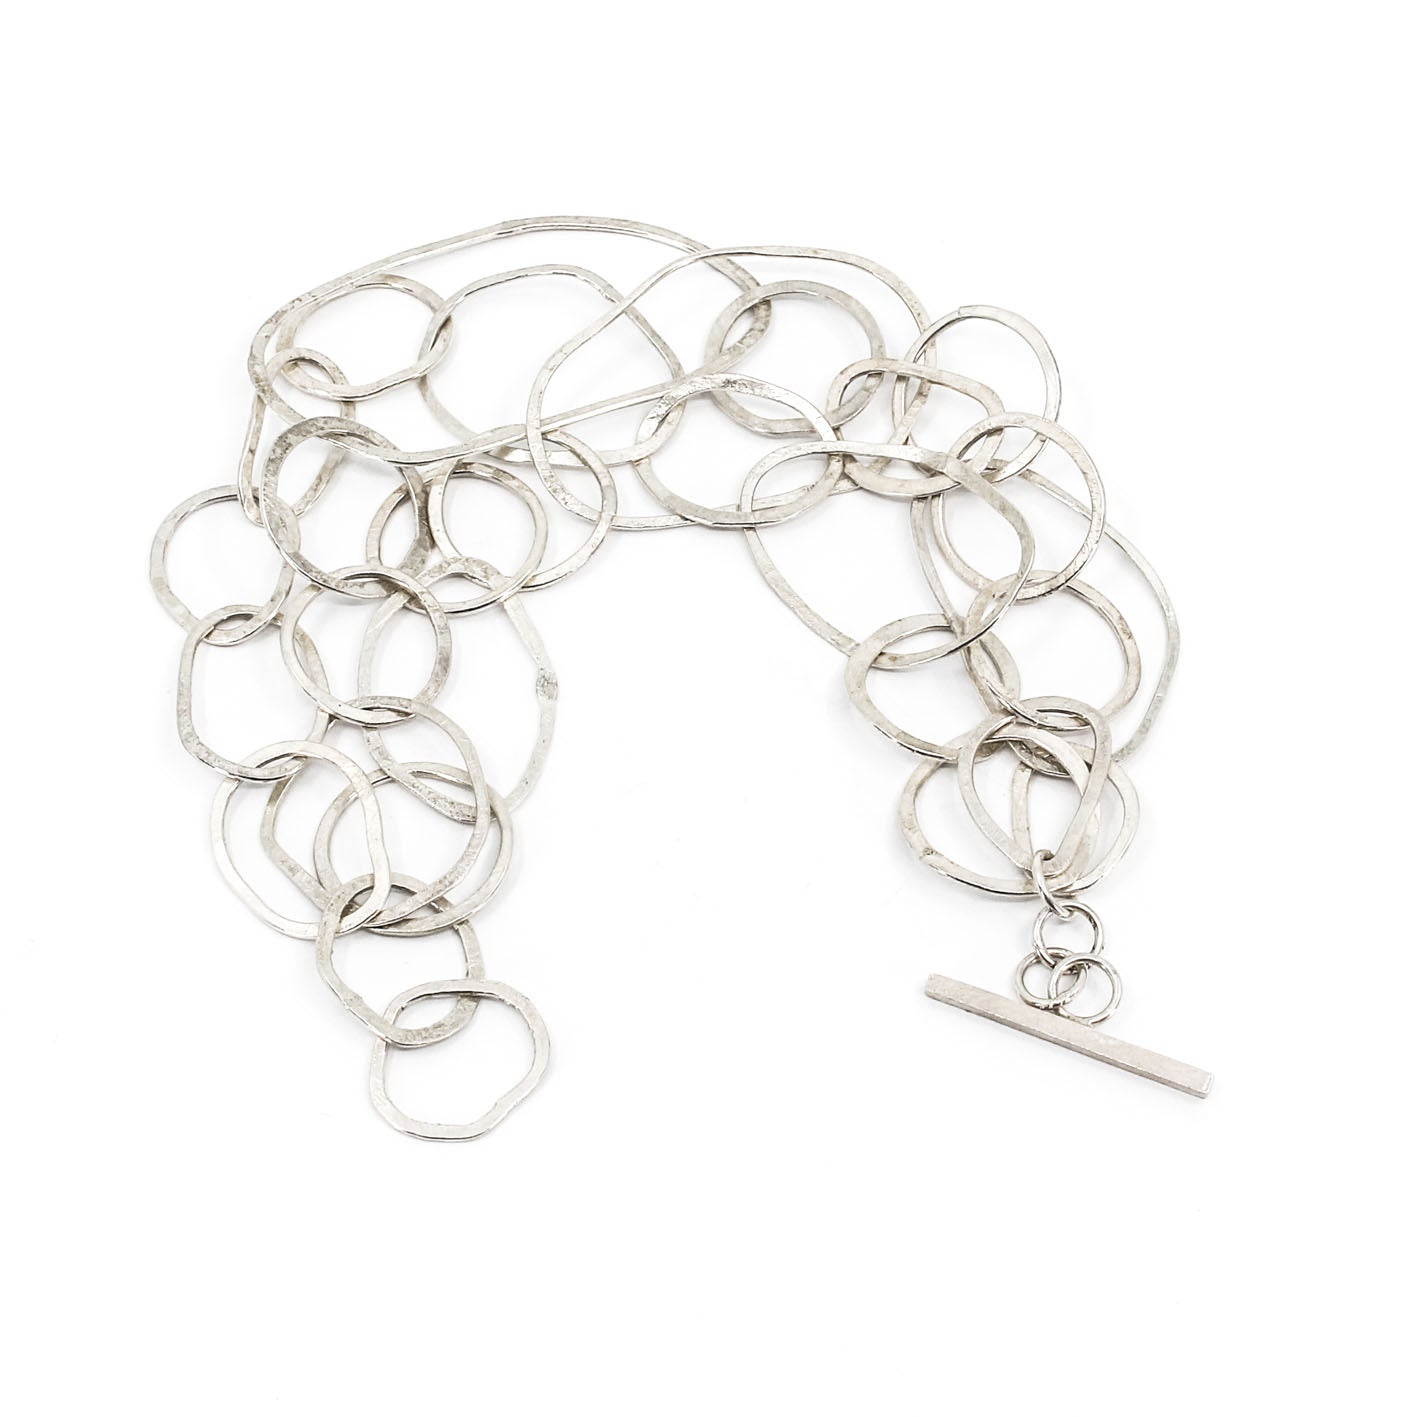 modern multi link sterling silver bracelet • hammered • handmade in France